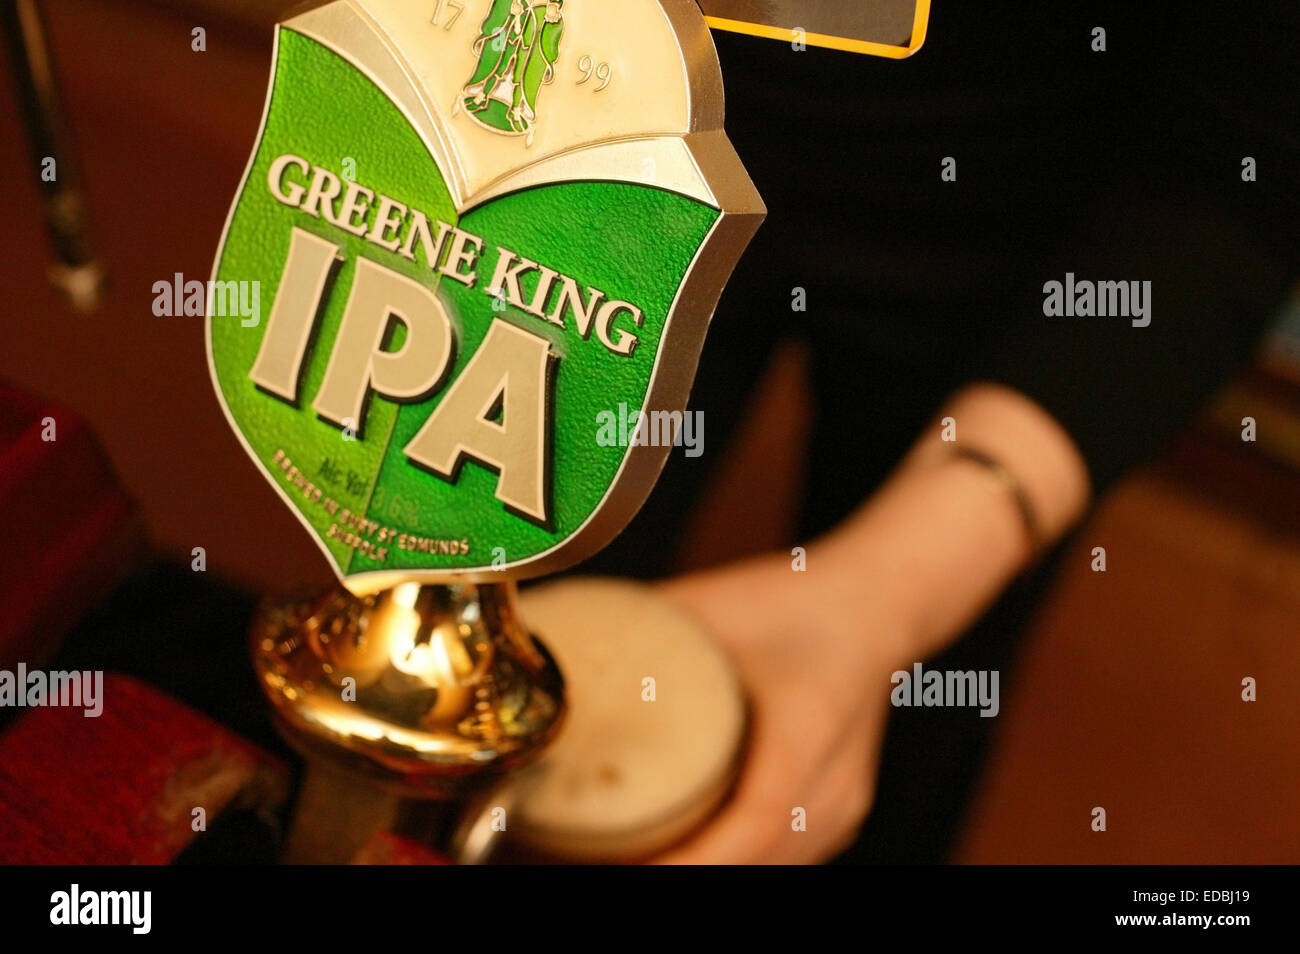 La figura mostra una pinta della Greene King IPA essendo servito presso un pub di Londra. Foto Stock